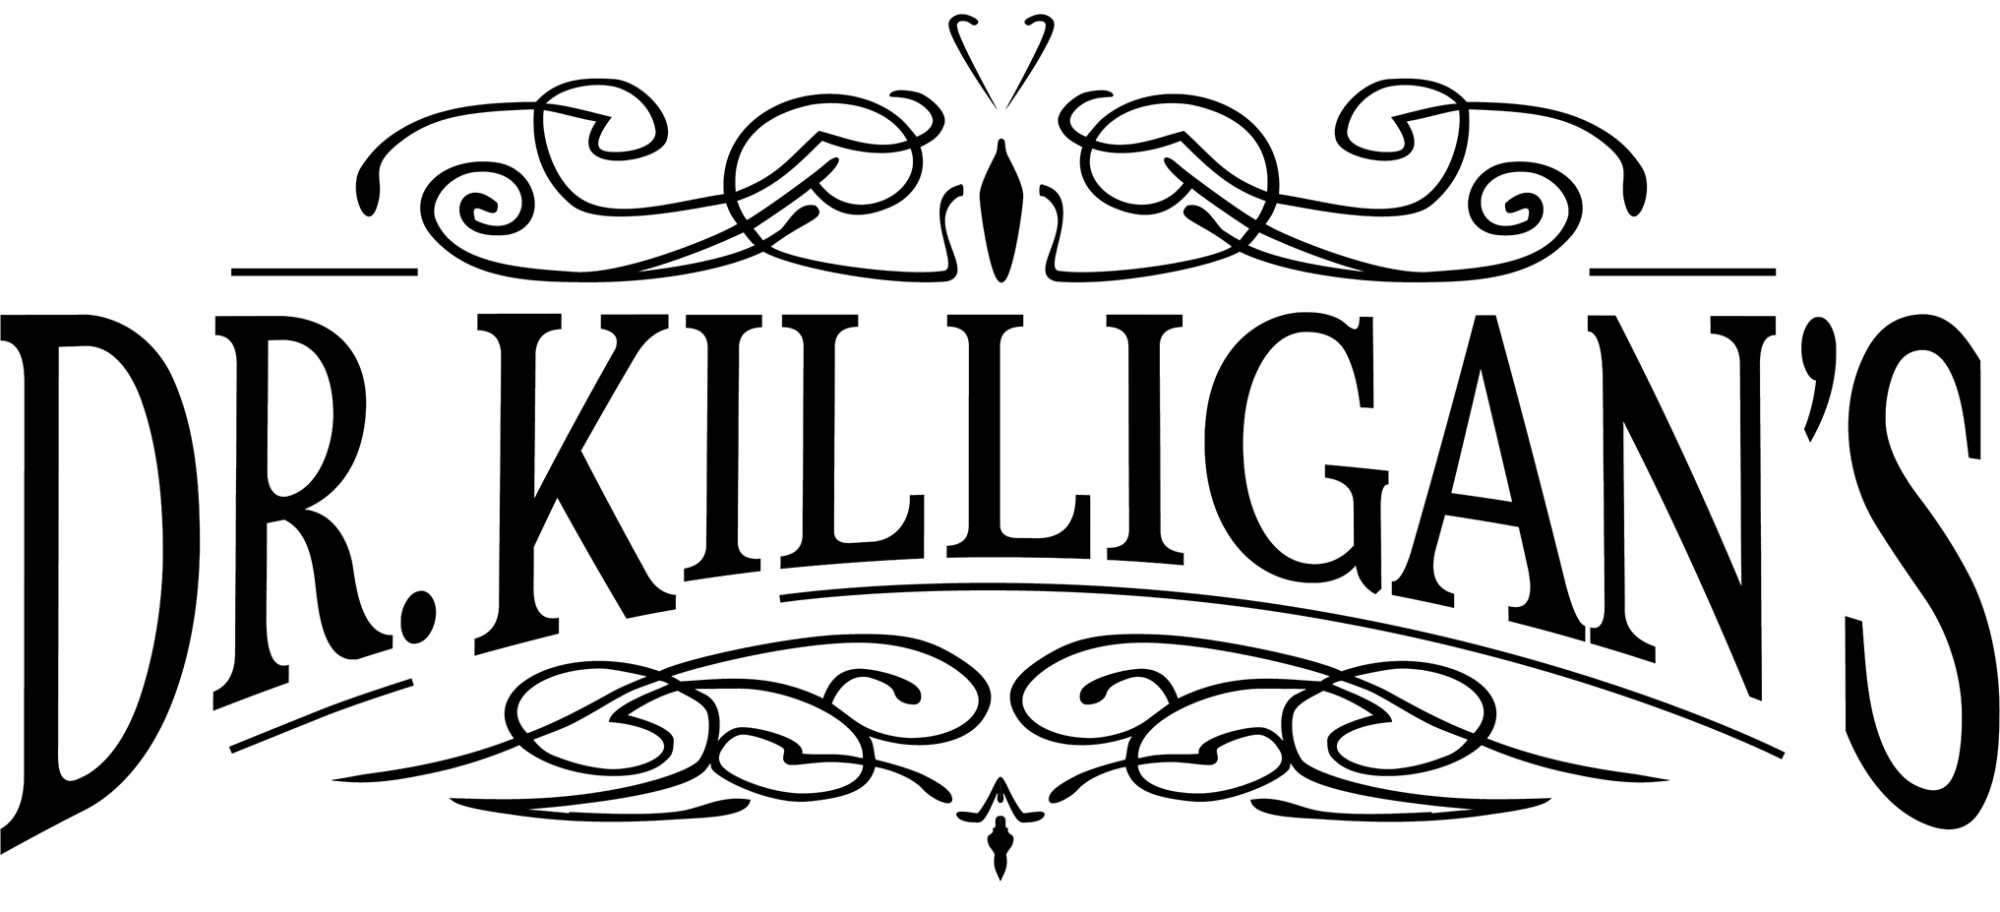 Dr. Killigan's